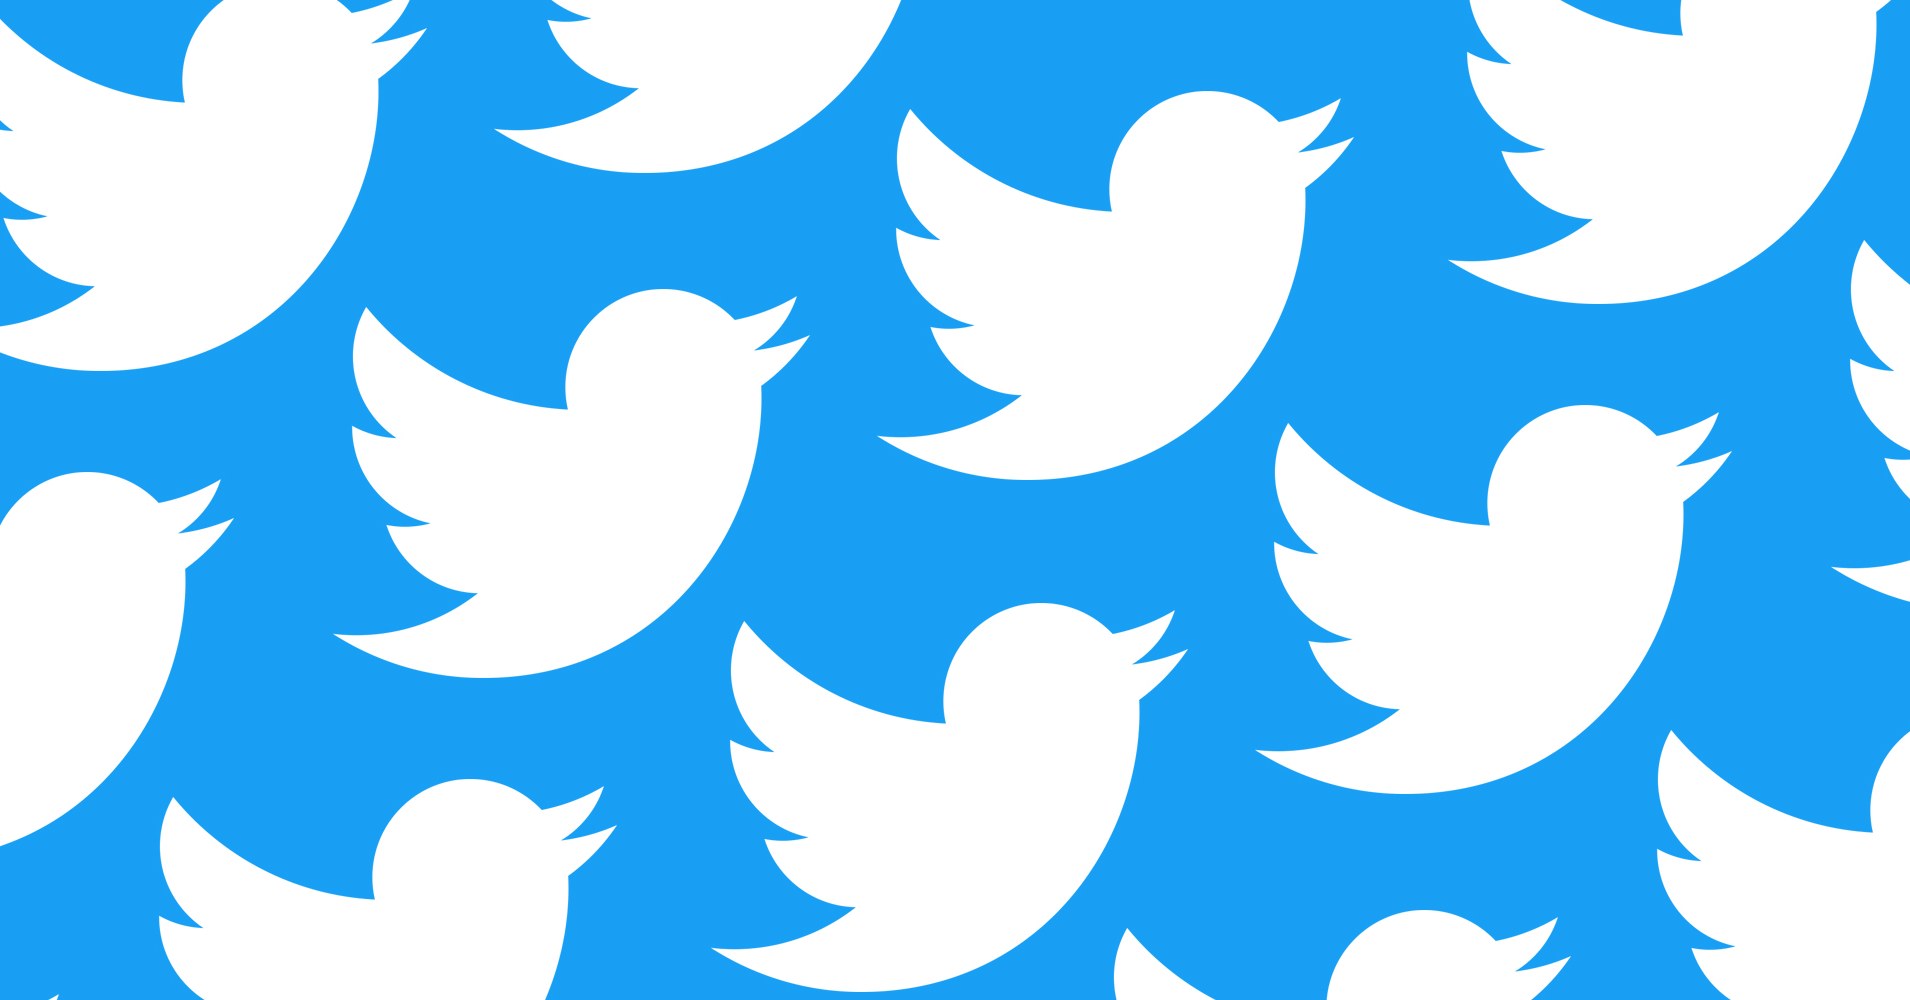 İşte karşınızda 2019 Twitter global raporu! #bunlaryaşandı